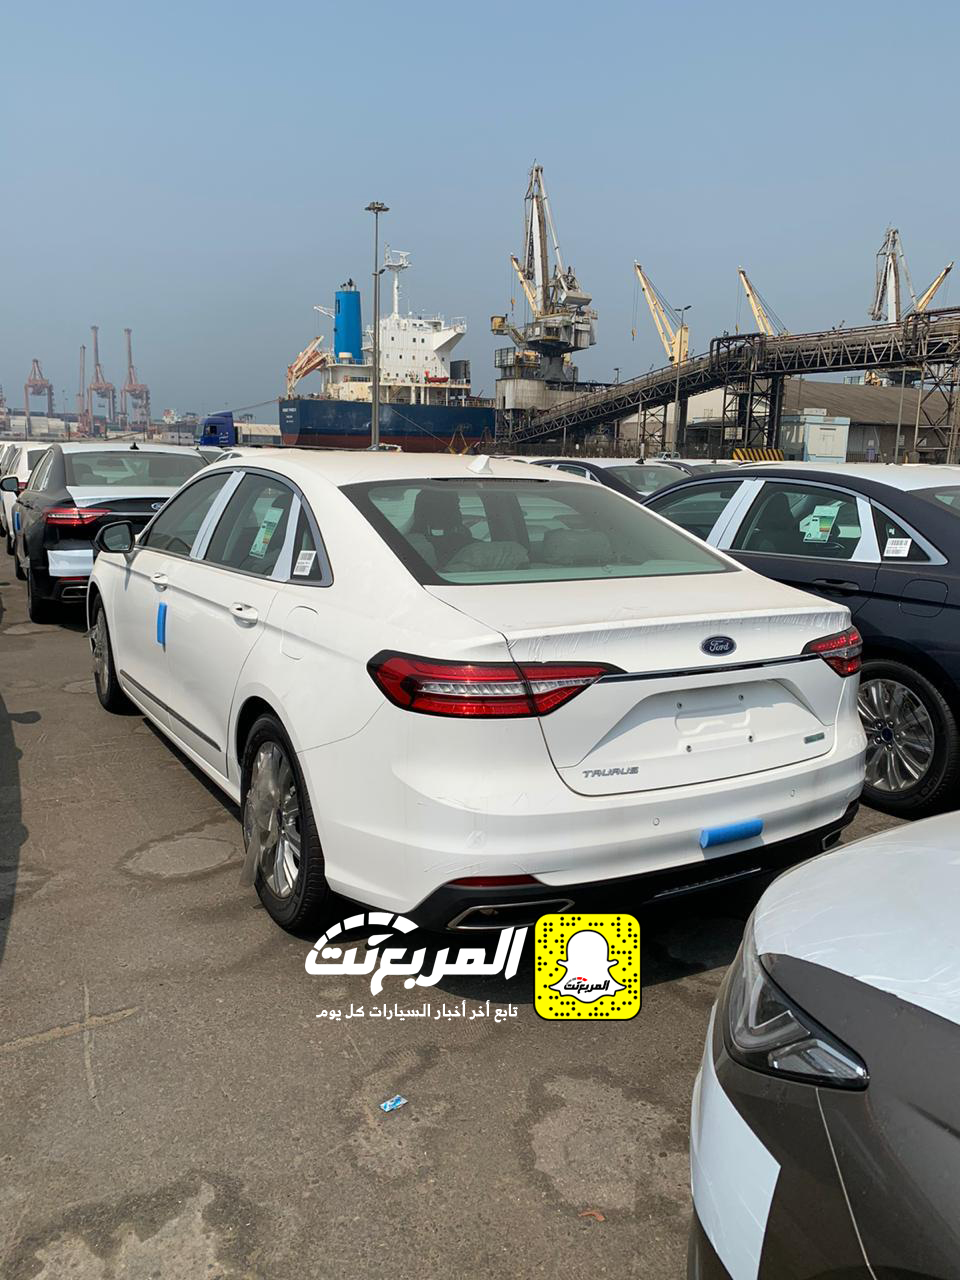 "بالصور" وصول فورد توروس 2020 الجديدة كلياً الى السعودية + التفاصيل Ford Taurus 33